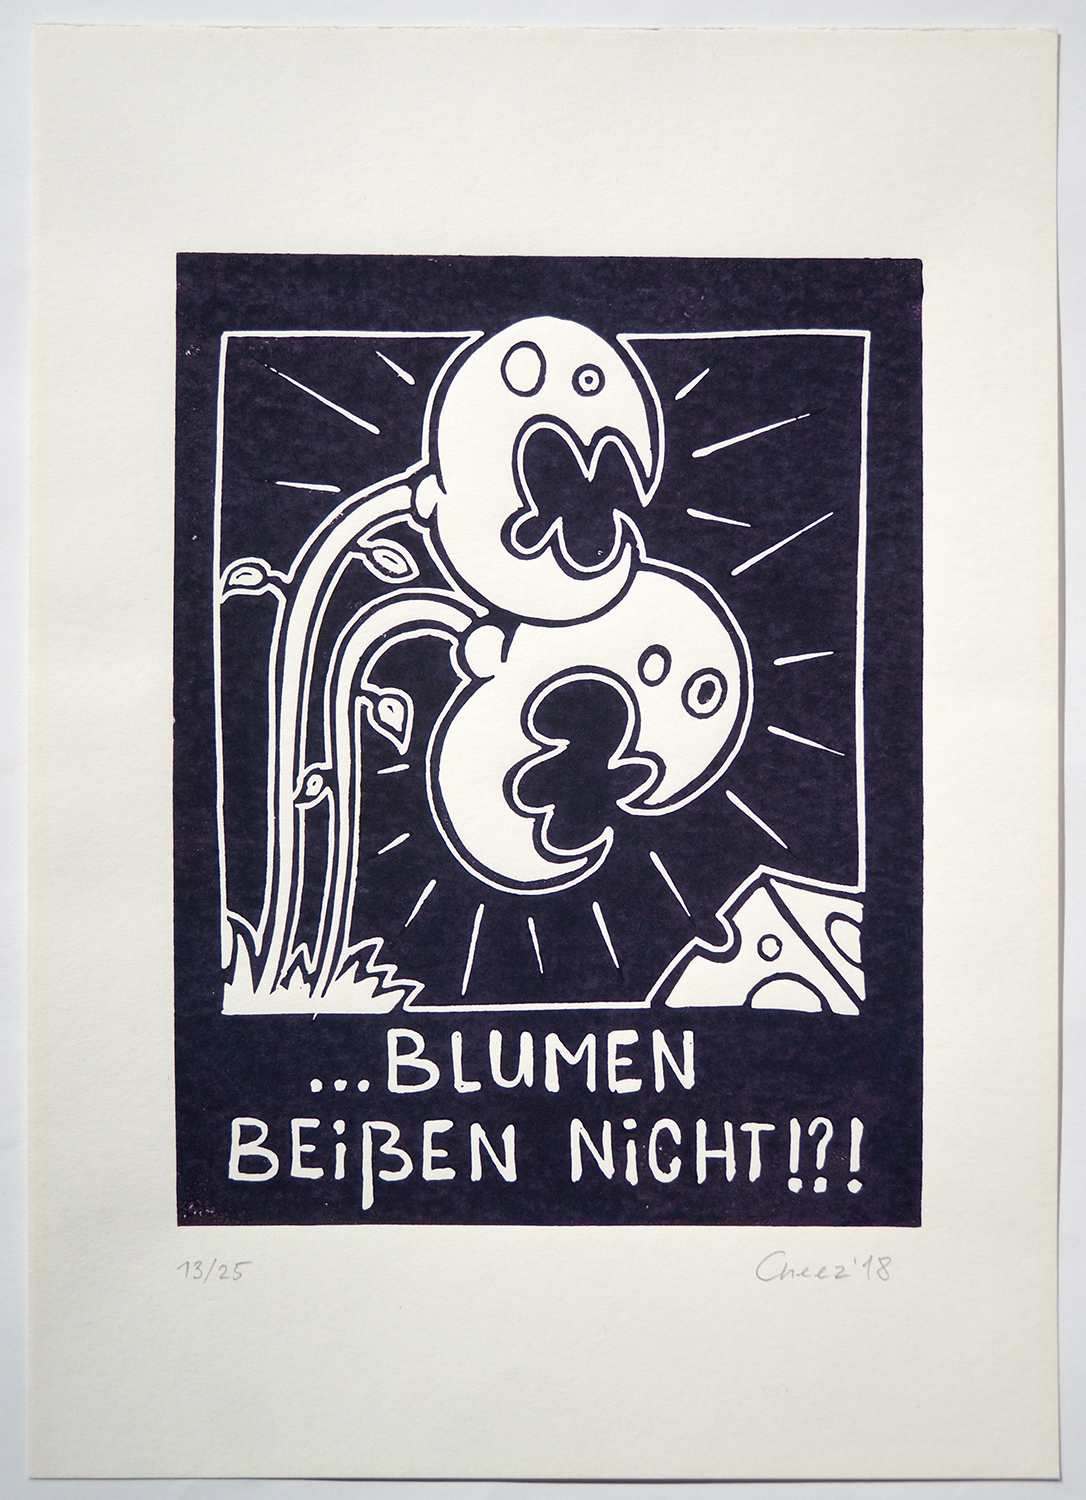 Cheez : "Drei Käse Hoch"   DINA 4 - 13/25  limited edition - erhältlich bei SALZIG Berlin Deiner Streetart Galerie